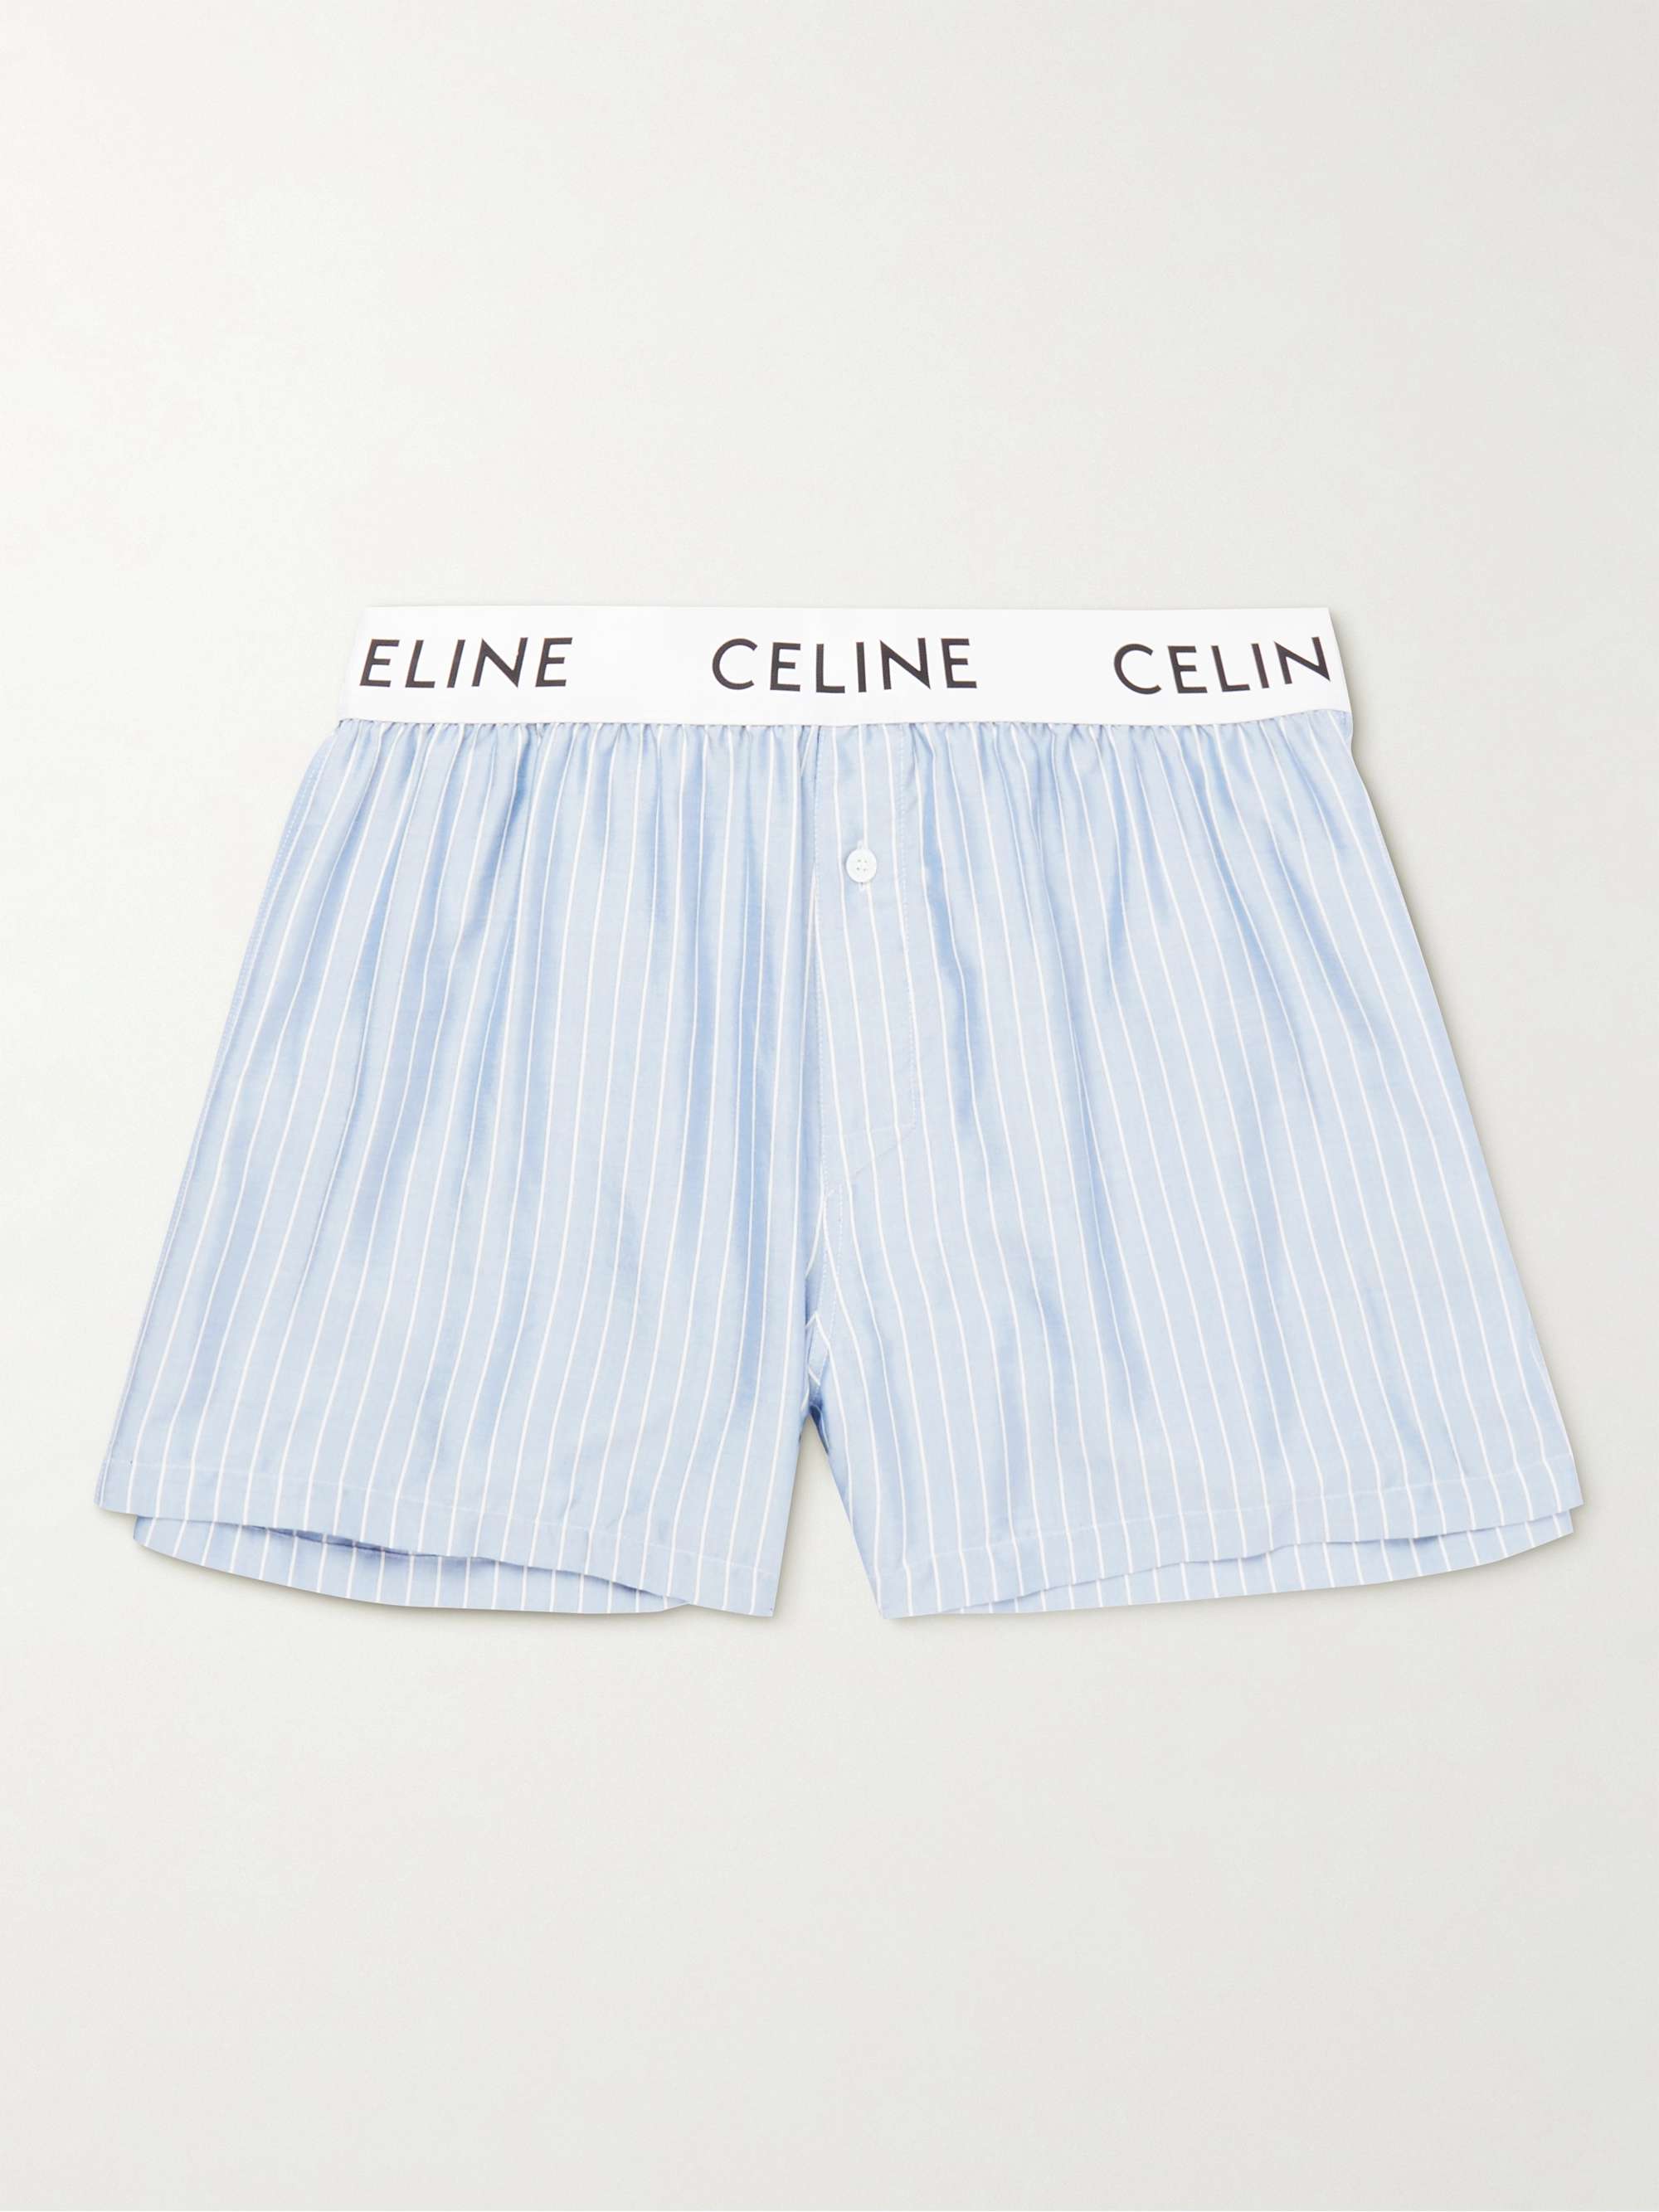 CELINE HOMME Straight-Leg Striped Silk Pyjama Shorts for Men | MR PORTER